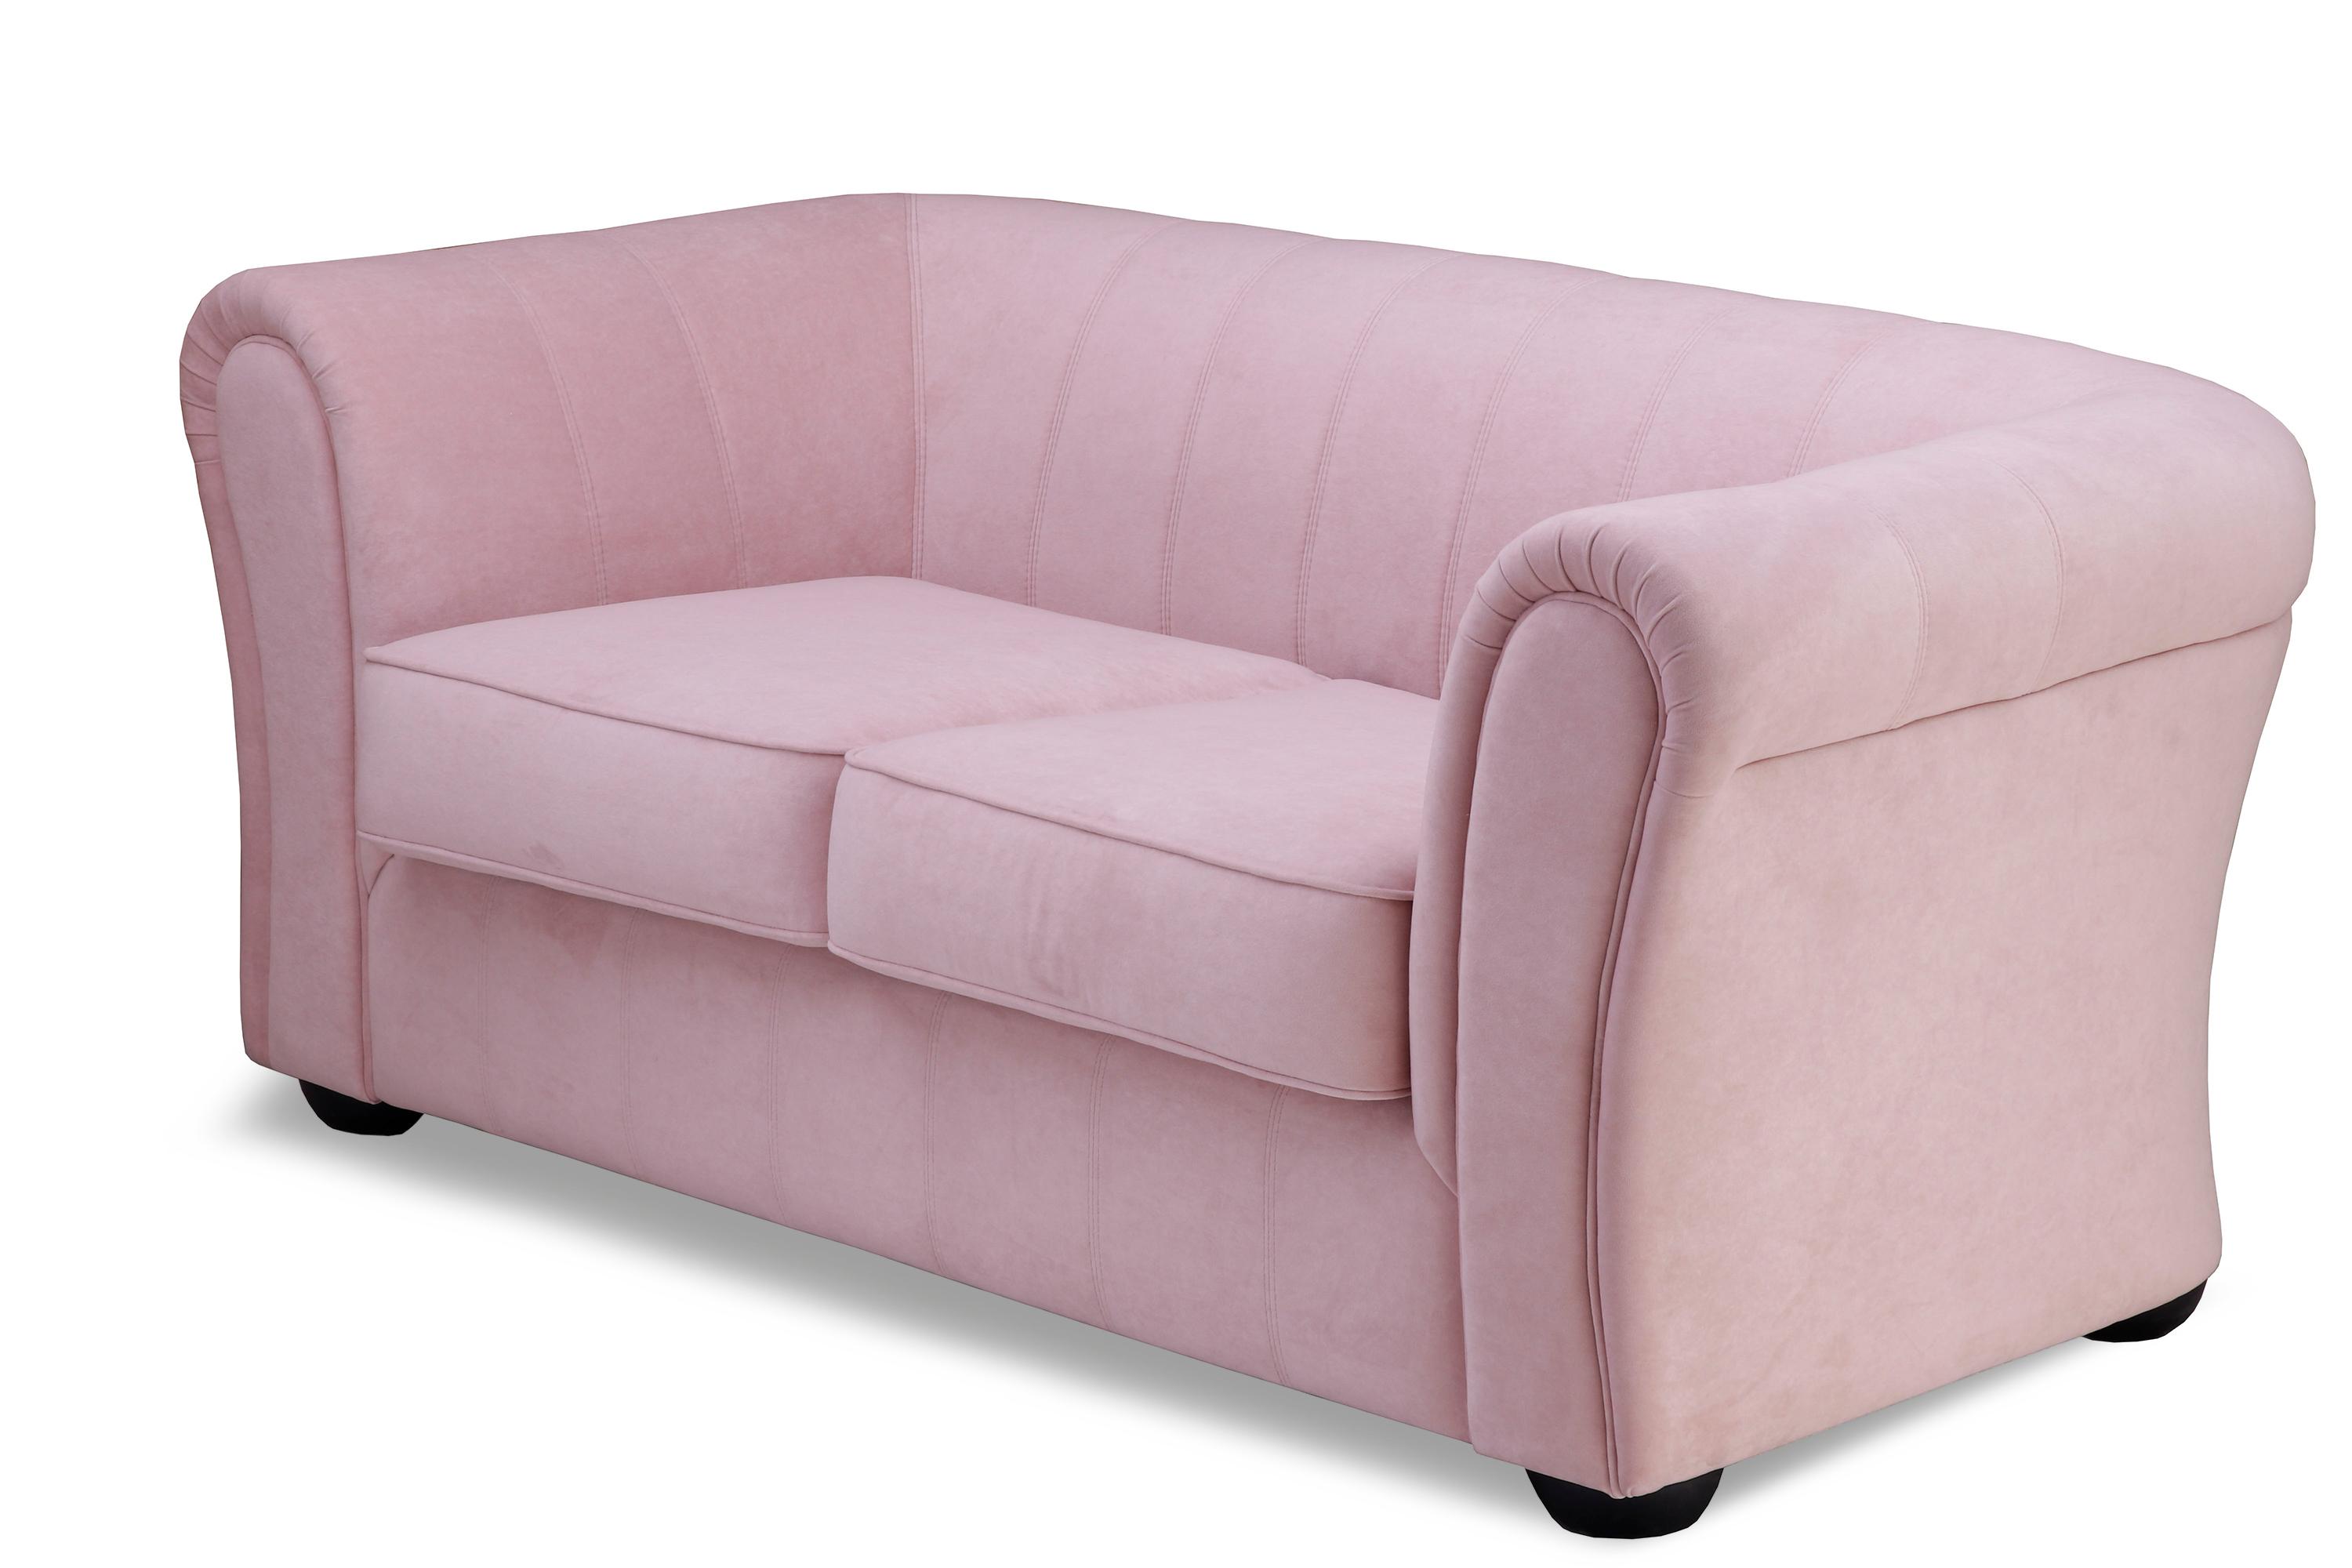 Фото №2 Бруклин Премиум двухместный диван-кровать велюр Ультра Роз